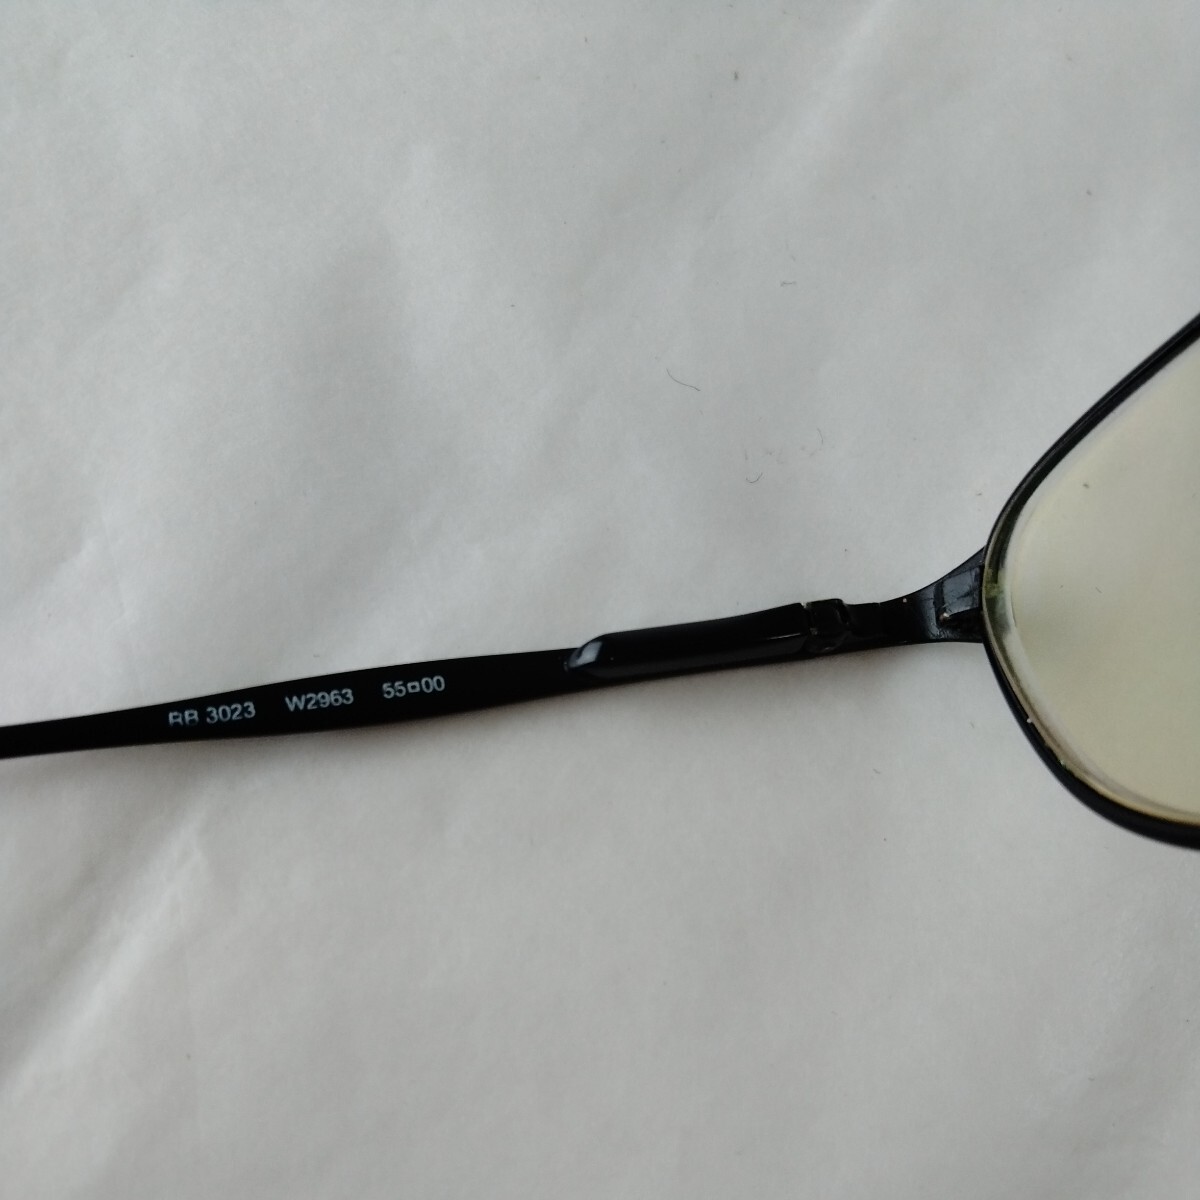 1 иен массовая закупка 3 позиций комплект * RayBan * авиатор солнцезащитные очки очки раз ввод * кейс 2 шт имеется 2262